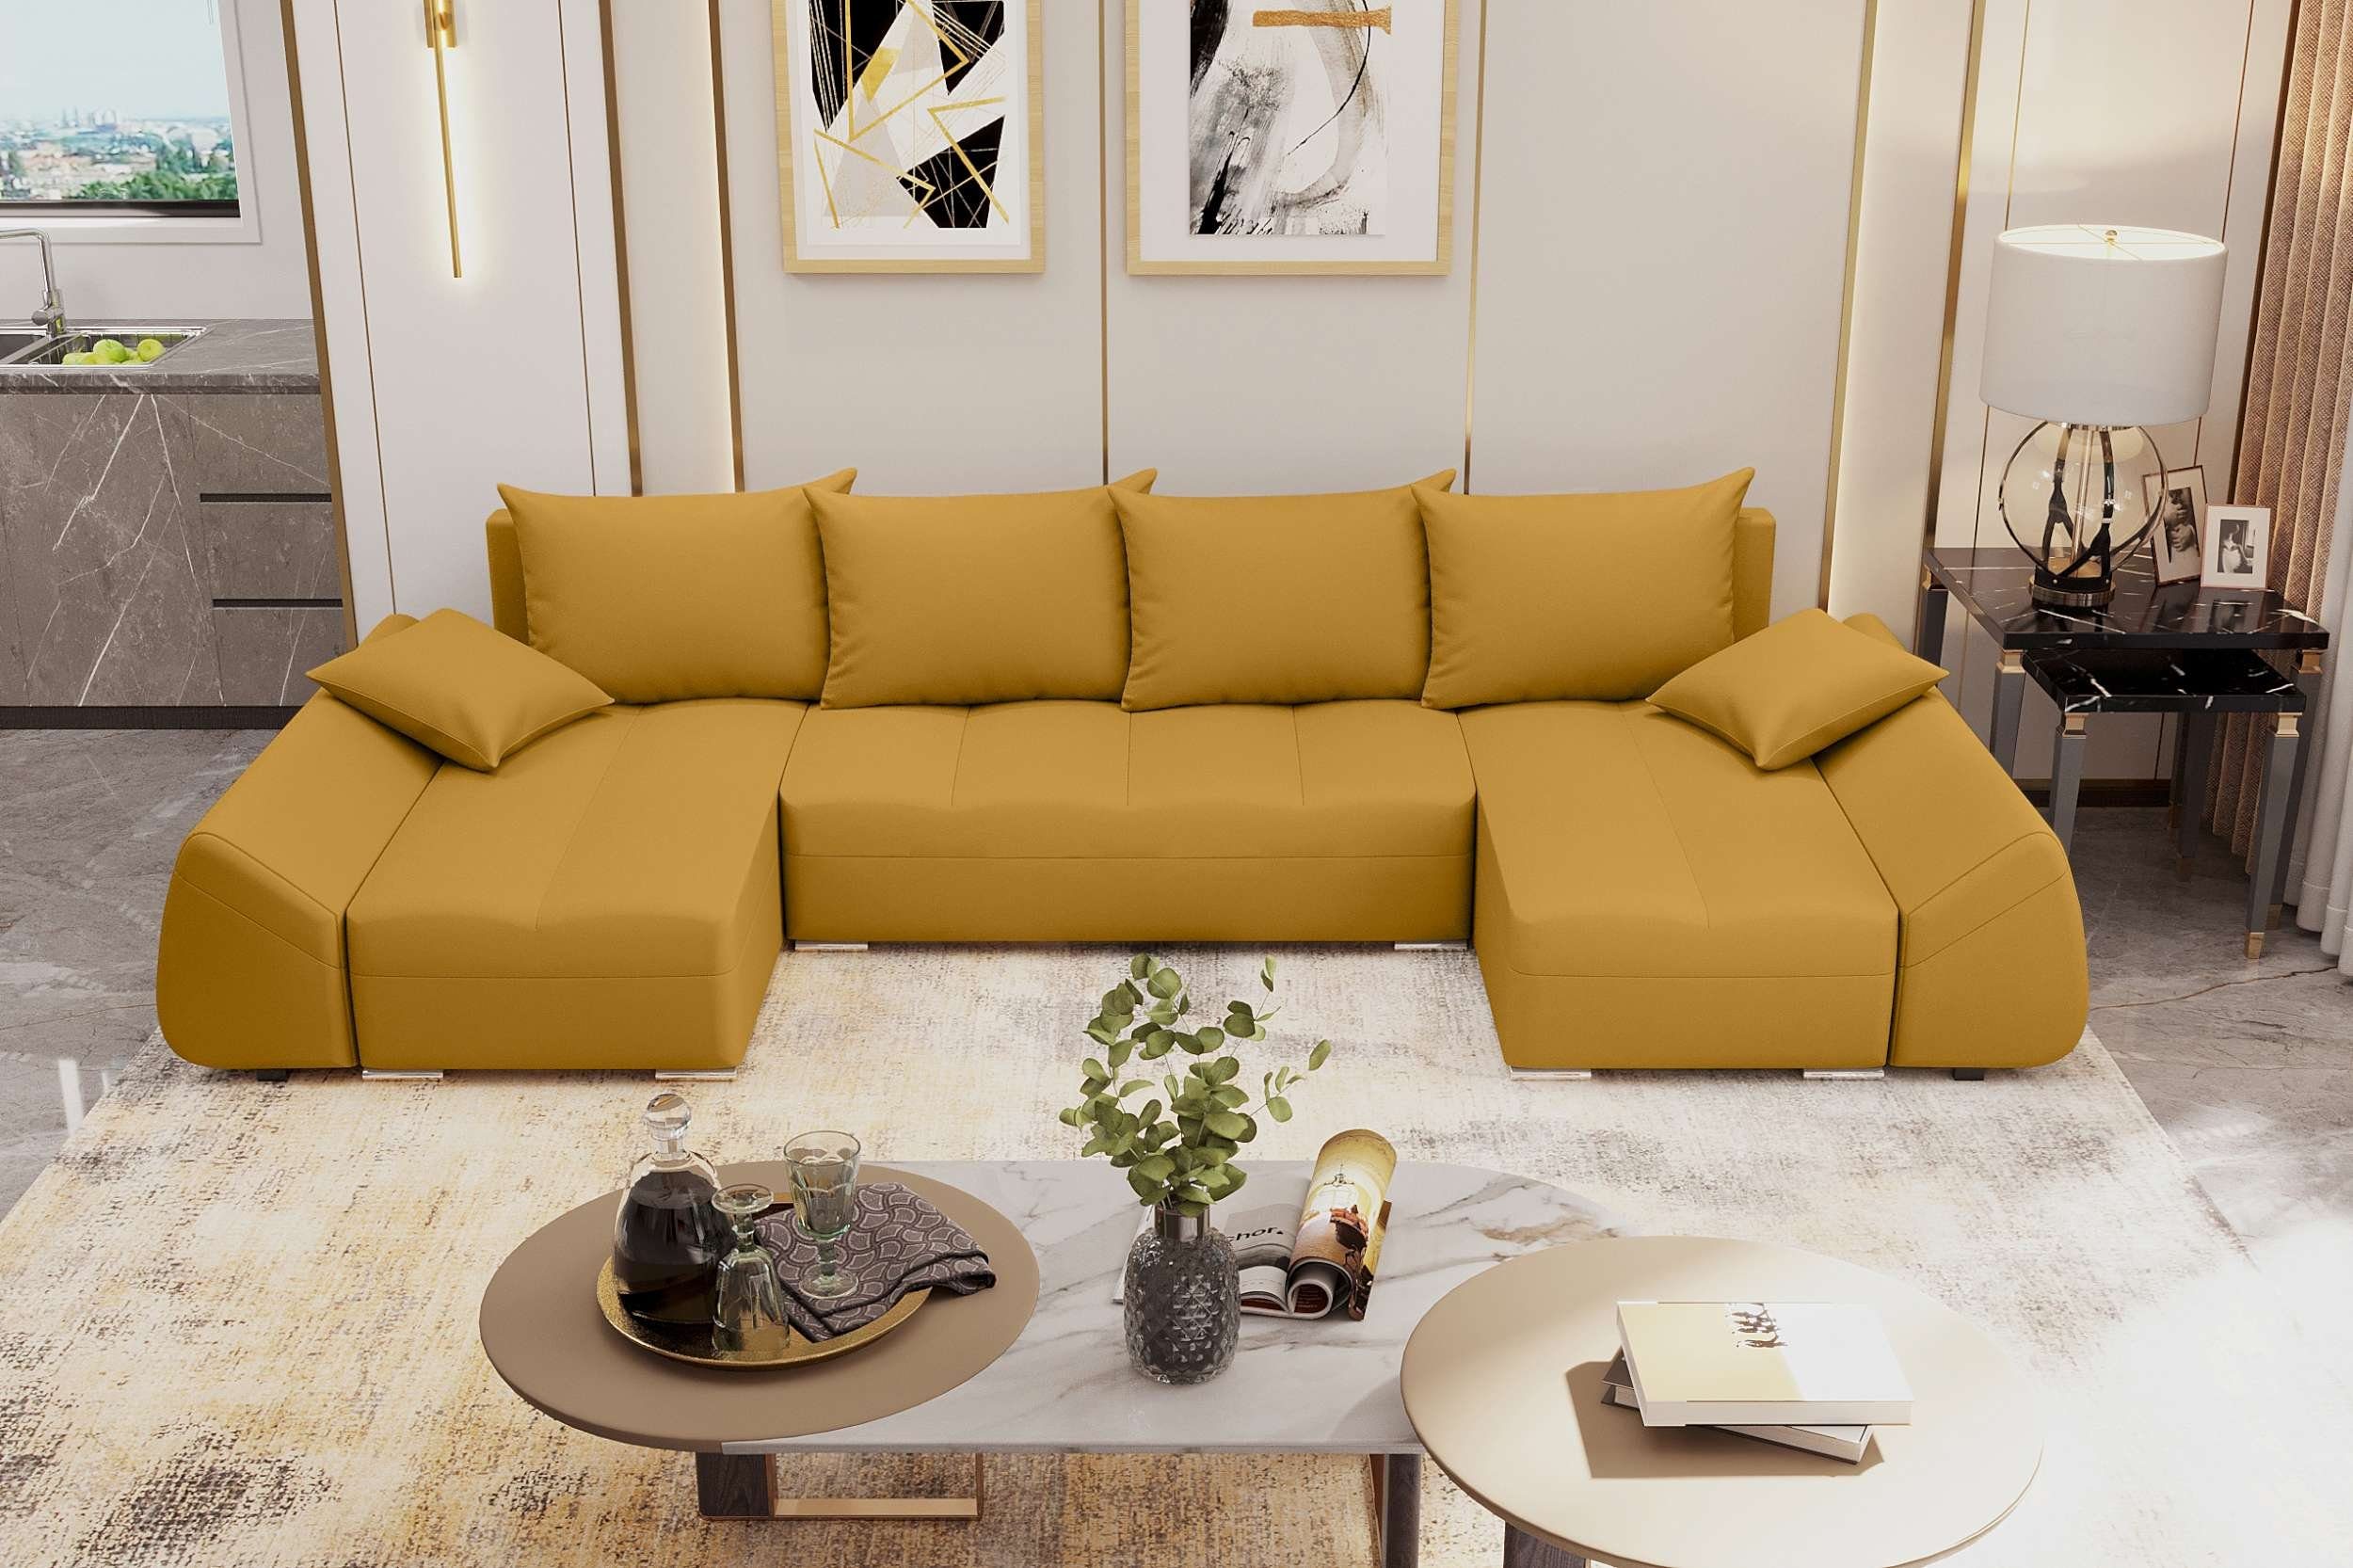 Stylefy Wohnlandschaft Madeira, U-Form, Eckcouch, Sofa, Sitzkomfort, mit Bettfunktion, mit Bettkasten, Modern Design